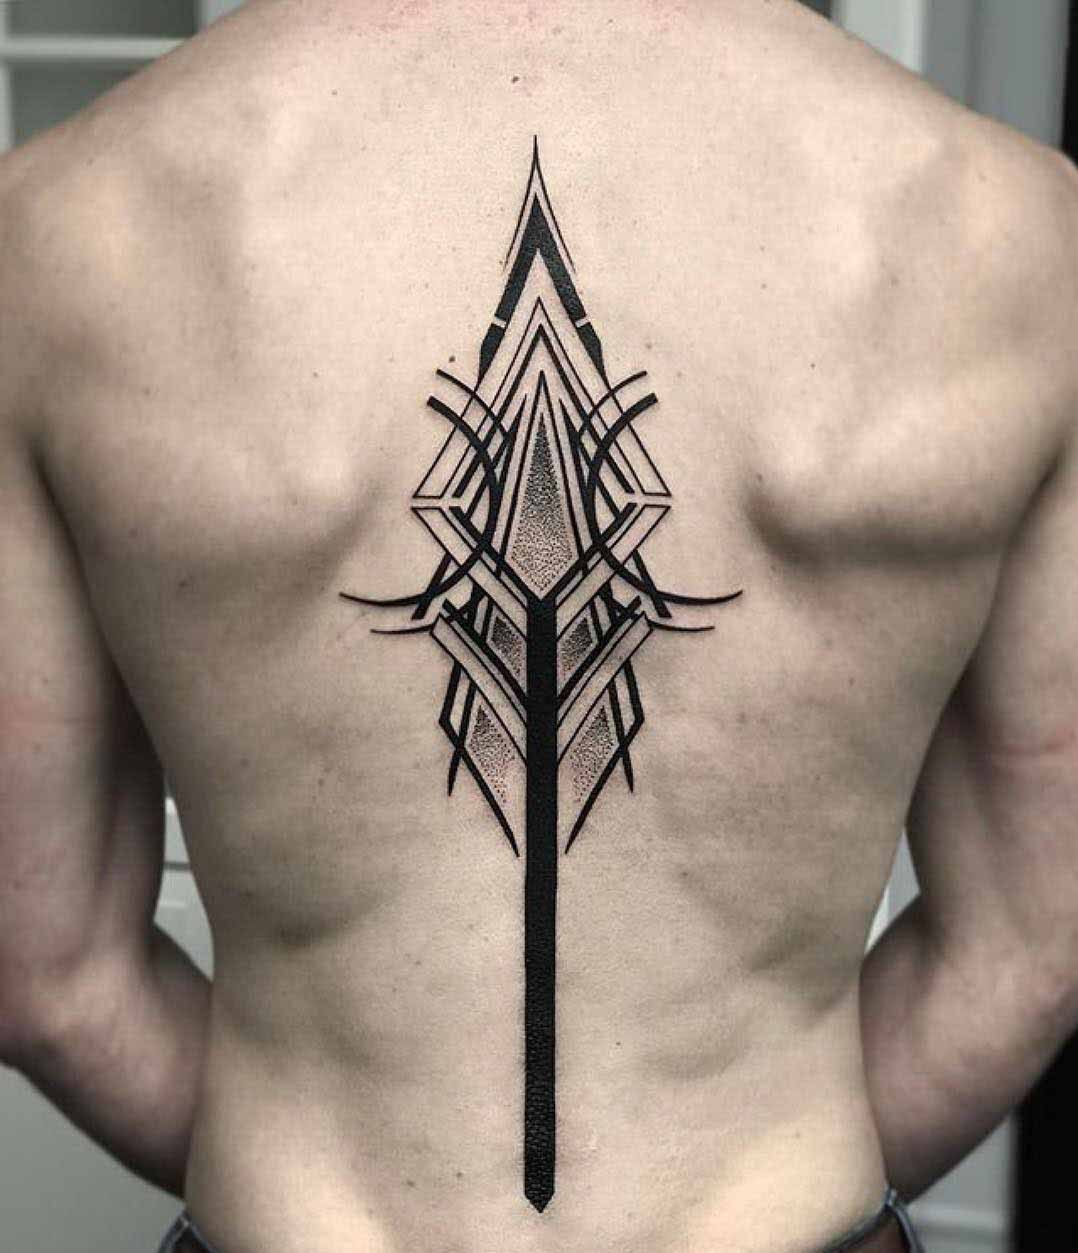 sumbolic spine tattoo